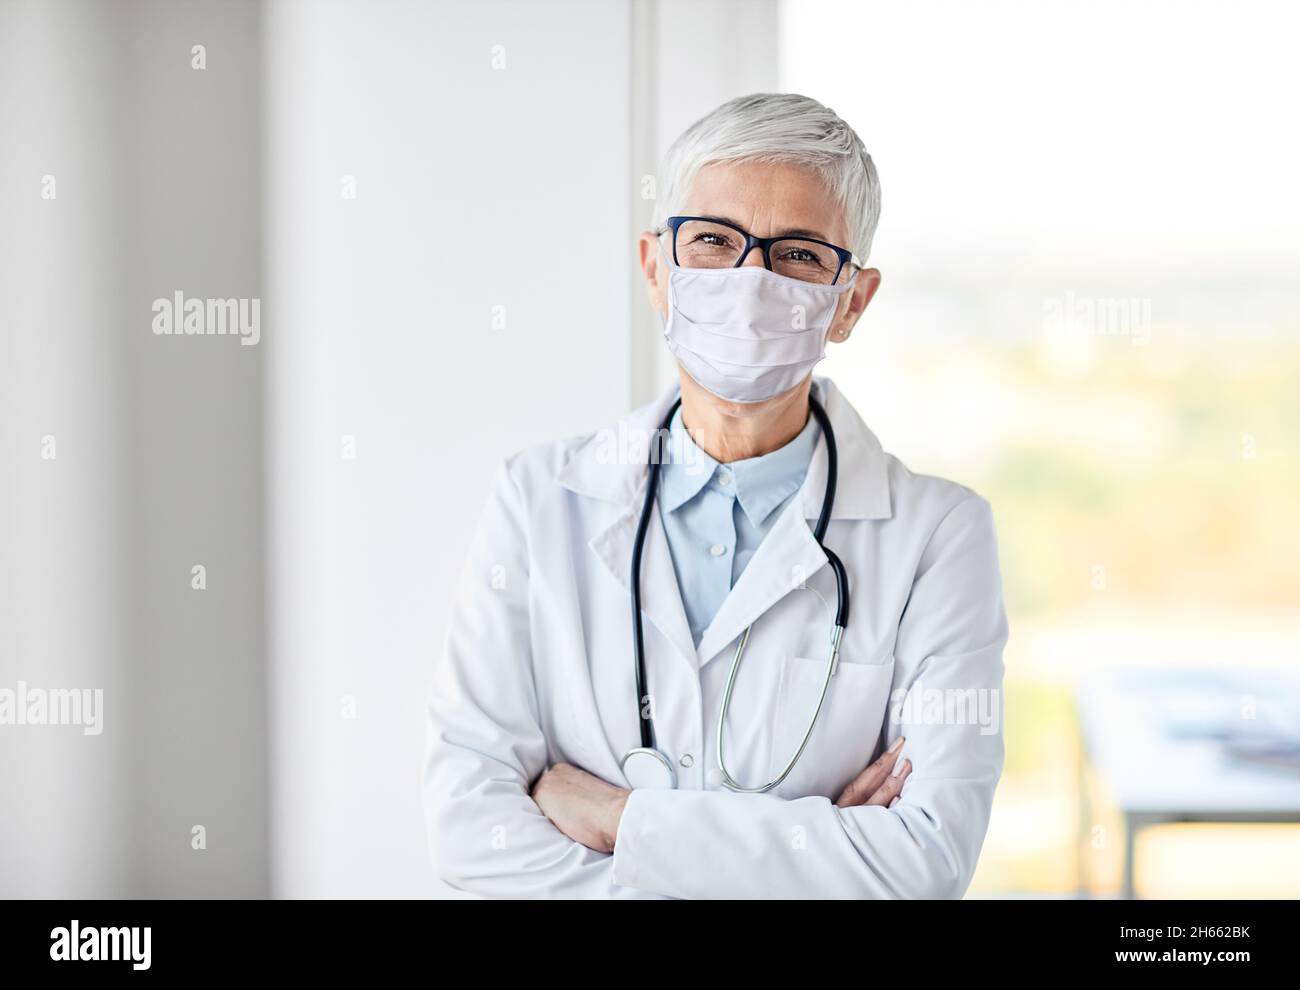 Frau Oberarzt Krankenhaus Medizin Gesundheitswesen Virus Maske Schutz Corona epidemischen Coronavirus Stockfoto